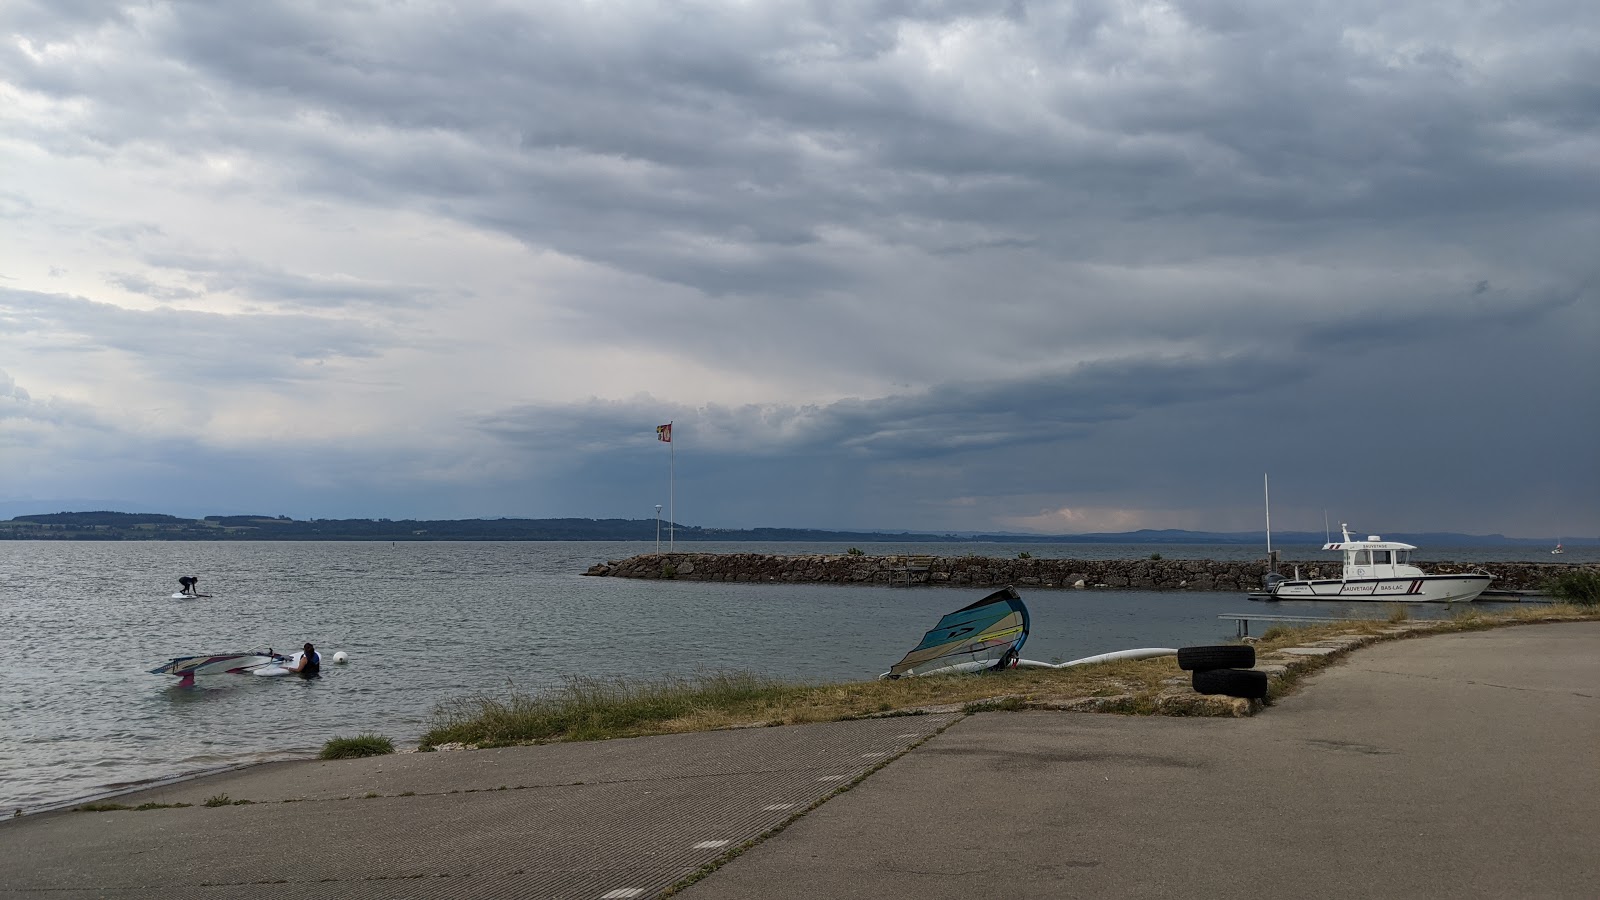 Foto de Plage Est de St-Blaise (plage des kites) com alto nível de limpeza